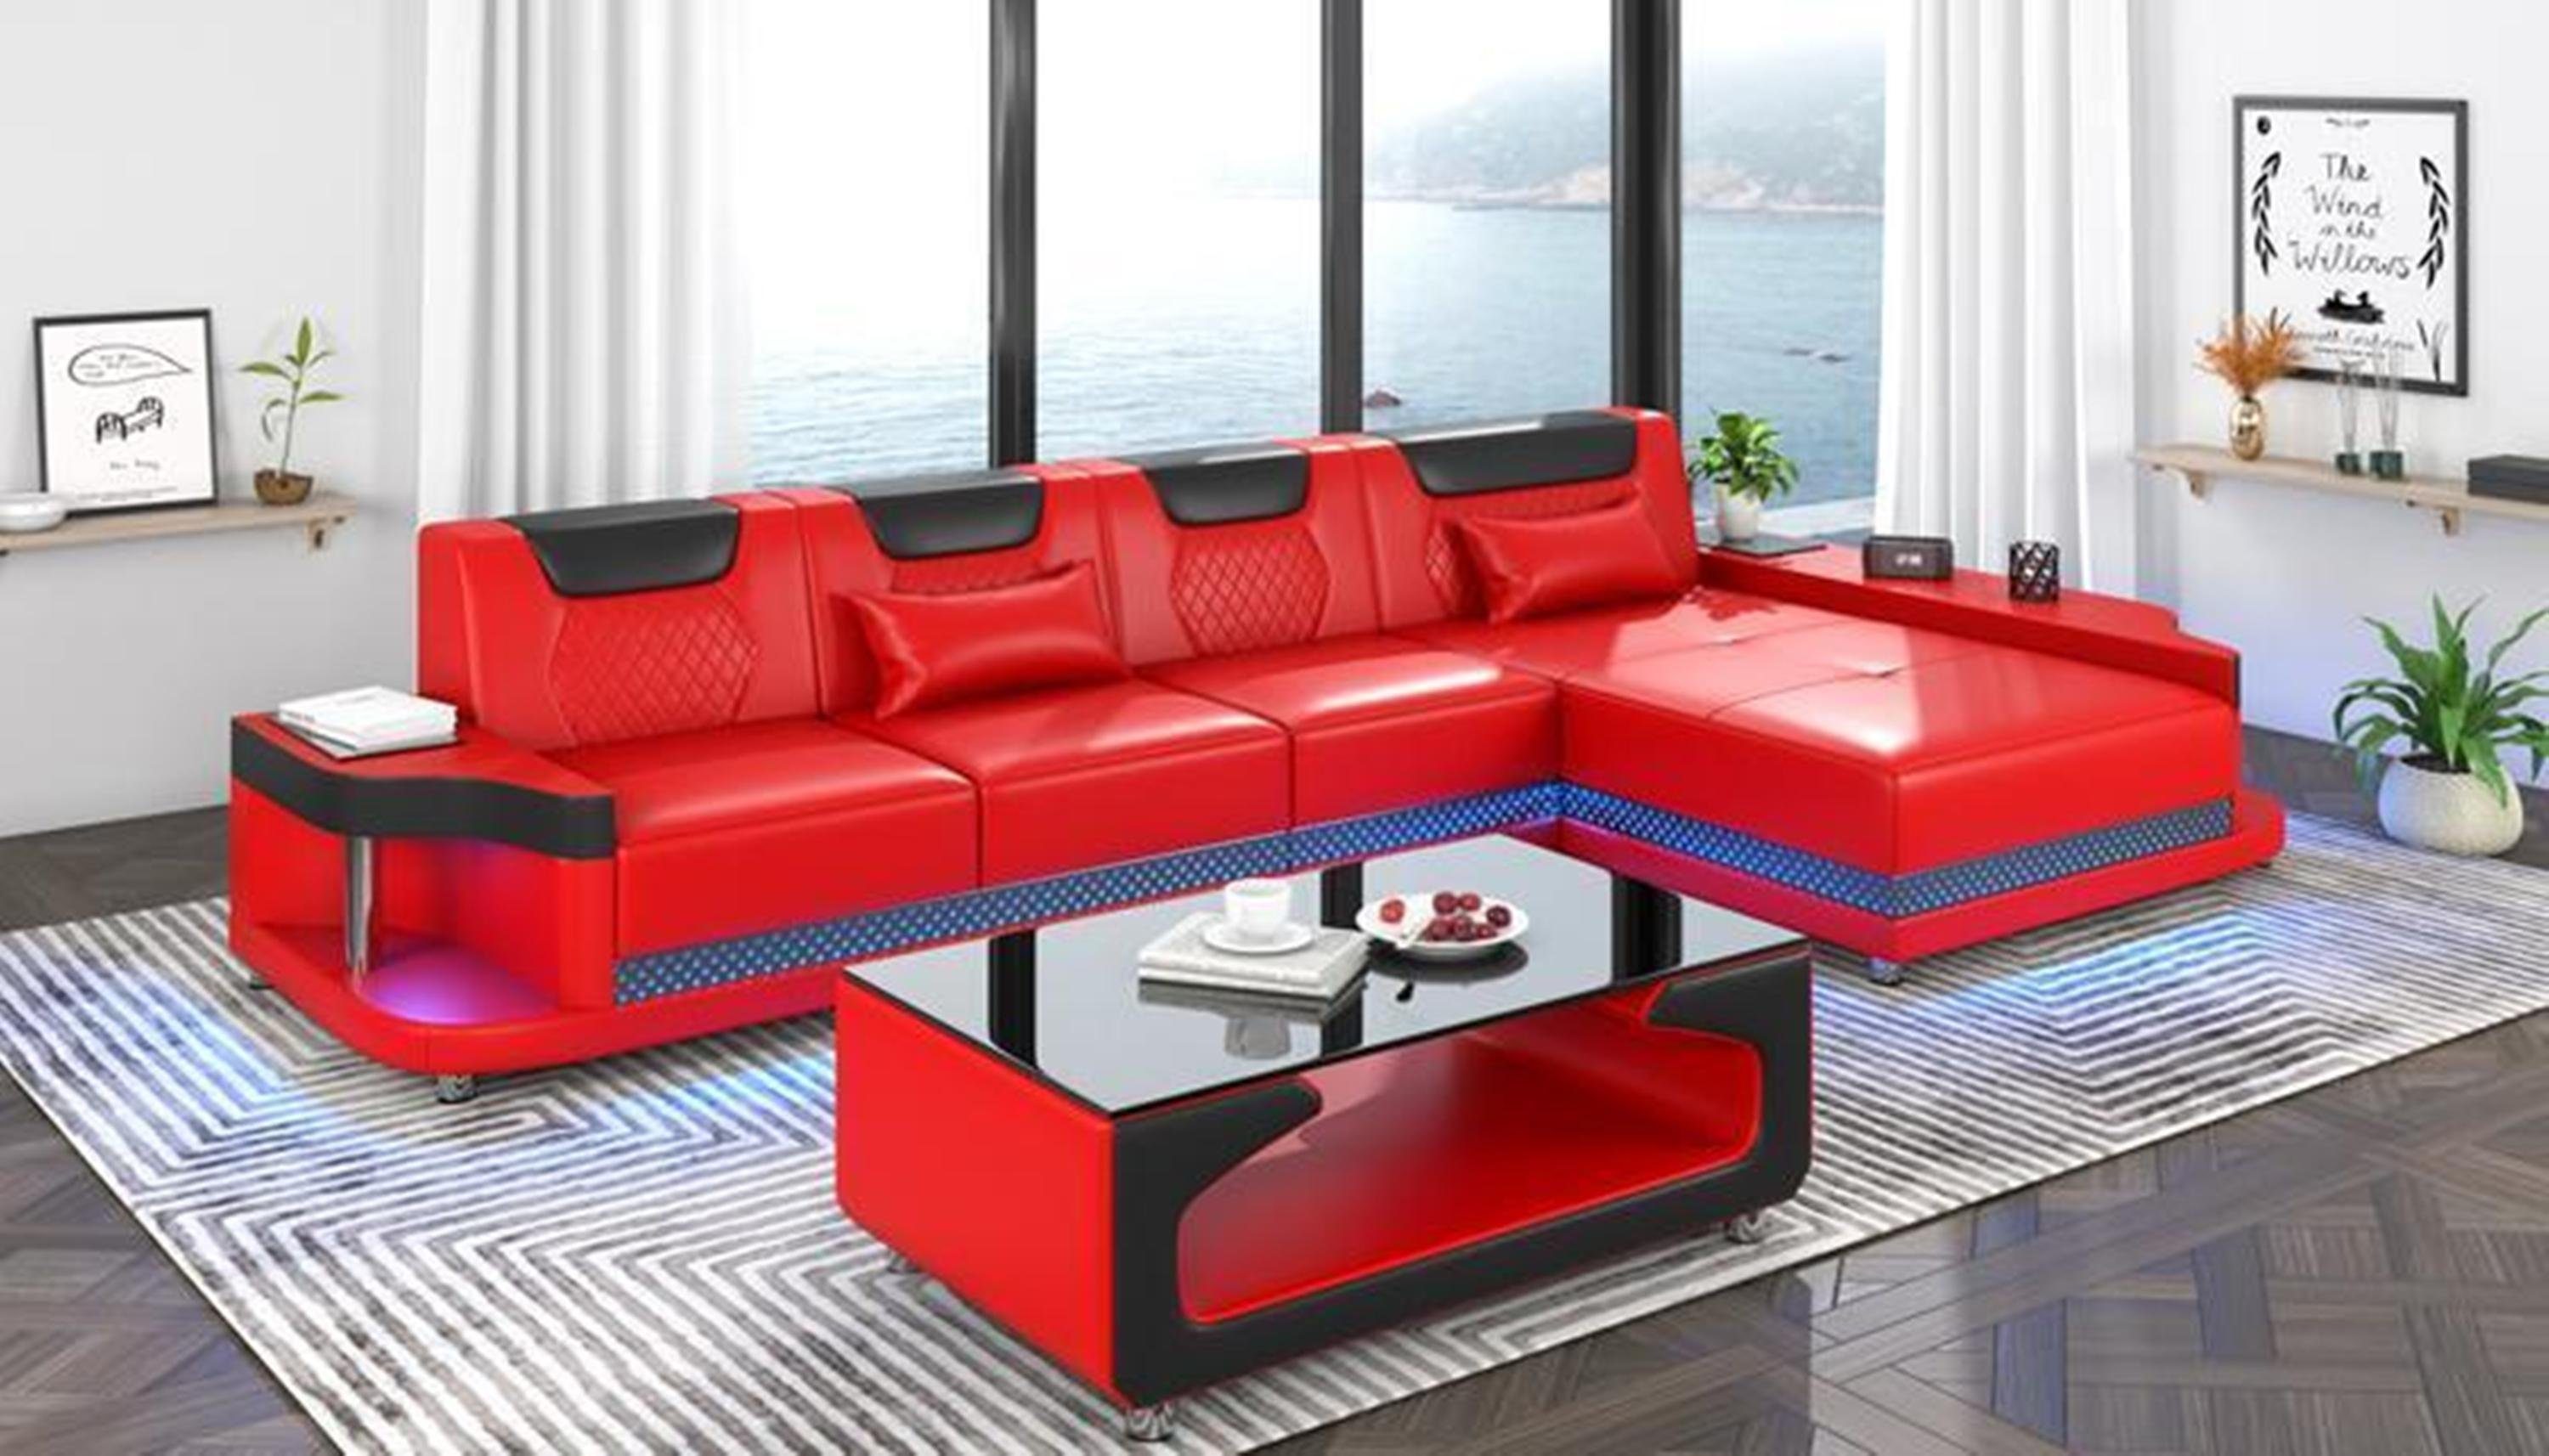 JVmoebel Ecksofa, Design Eckcouch Ecksofa Wohnzimmer Möbel Sofa L Form + Couchtisch Rot